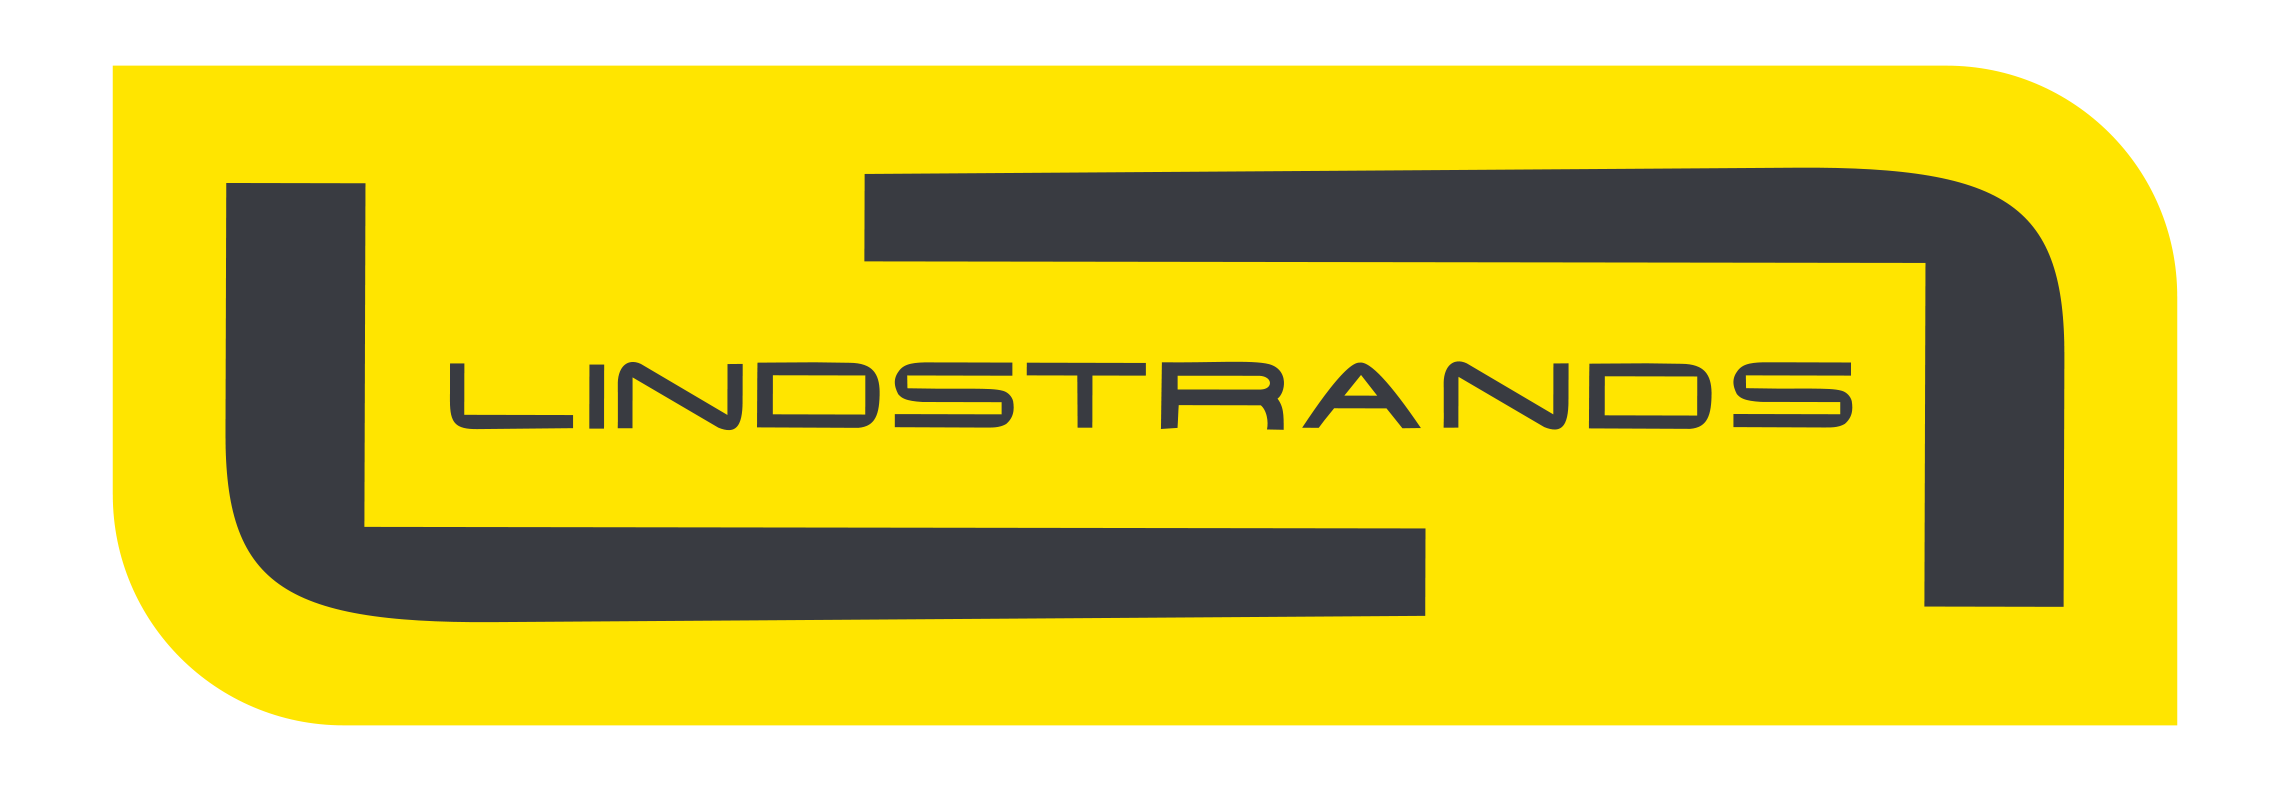 lindstrands_logo_jpg